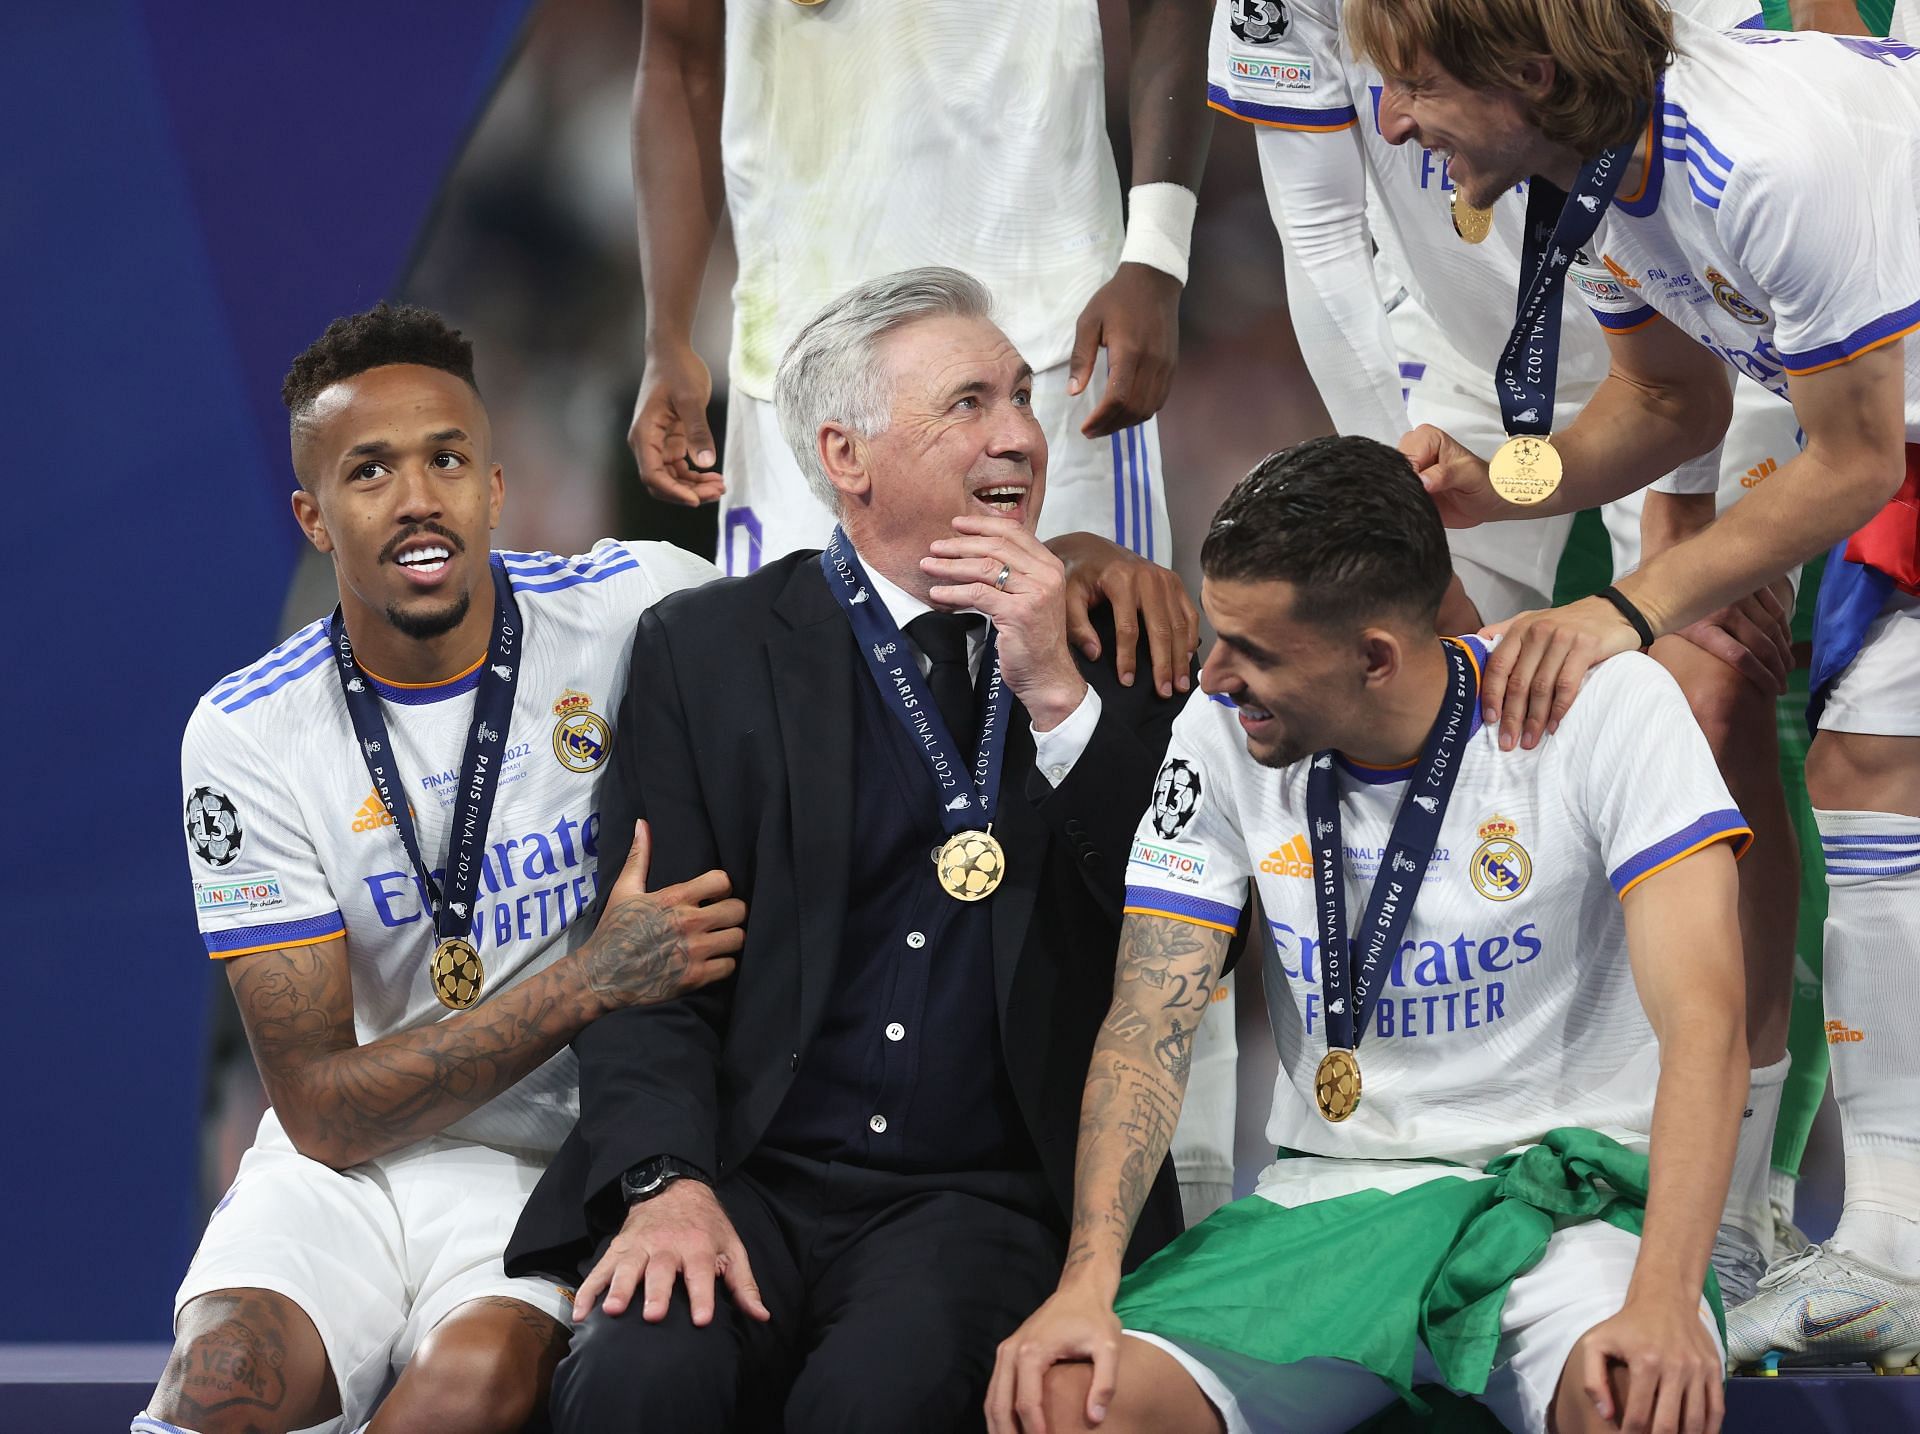 Carlo Ancelotti led Real Madrid to UEFA Champions League success last season